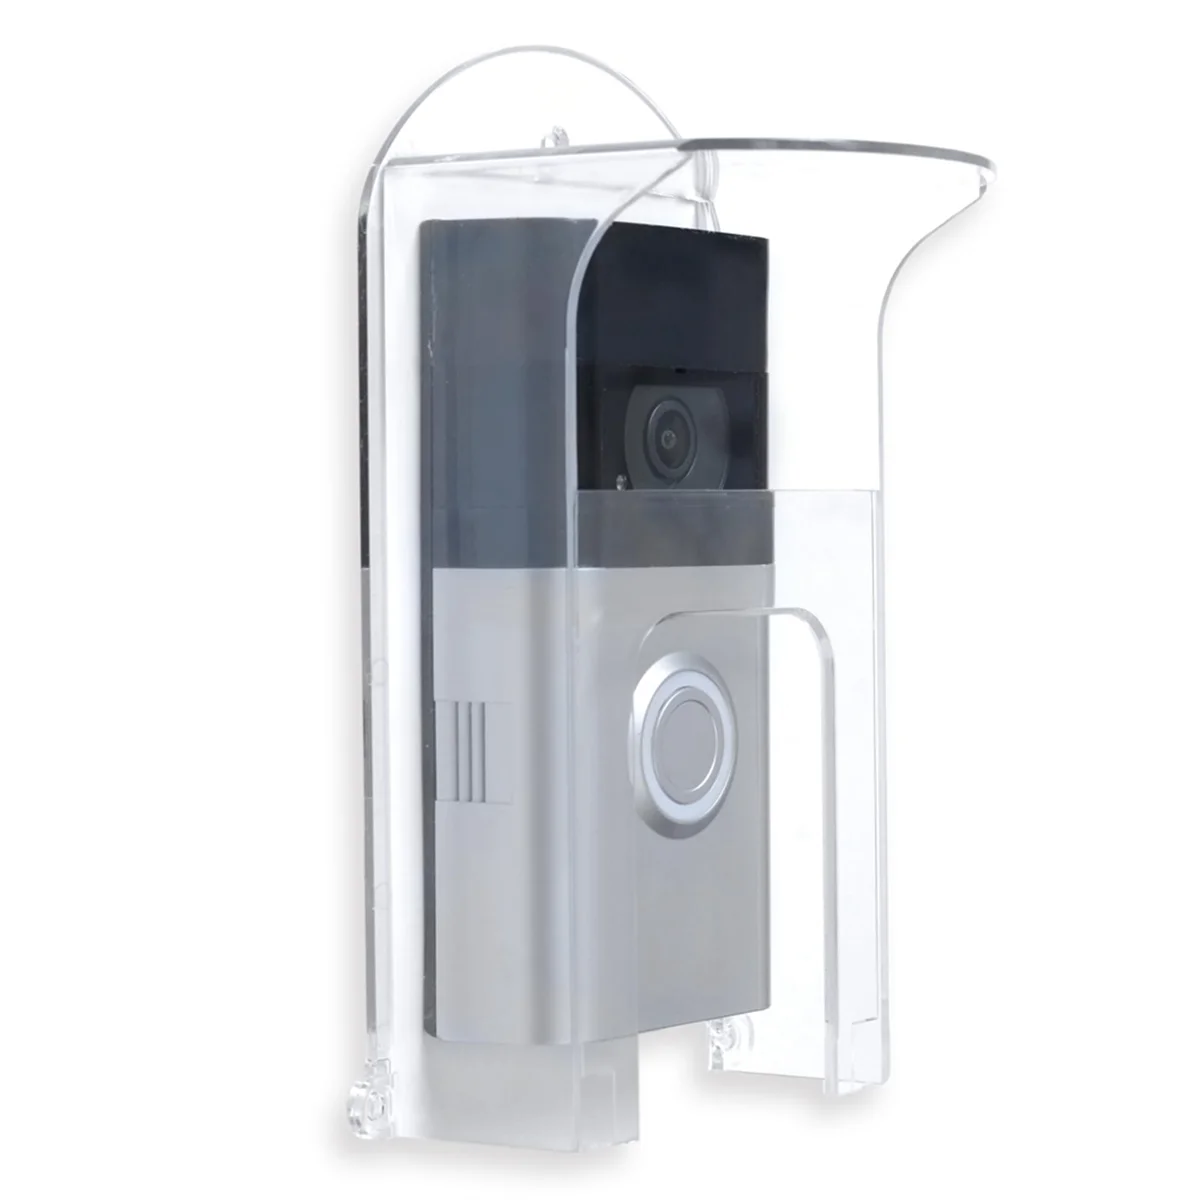 

Transparent Plastic Doorbell Rain Cover Suitable for Ring Models Doorbell Waterproof Protector Shield Video Doorbells